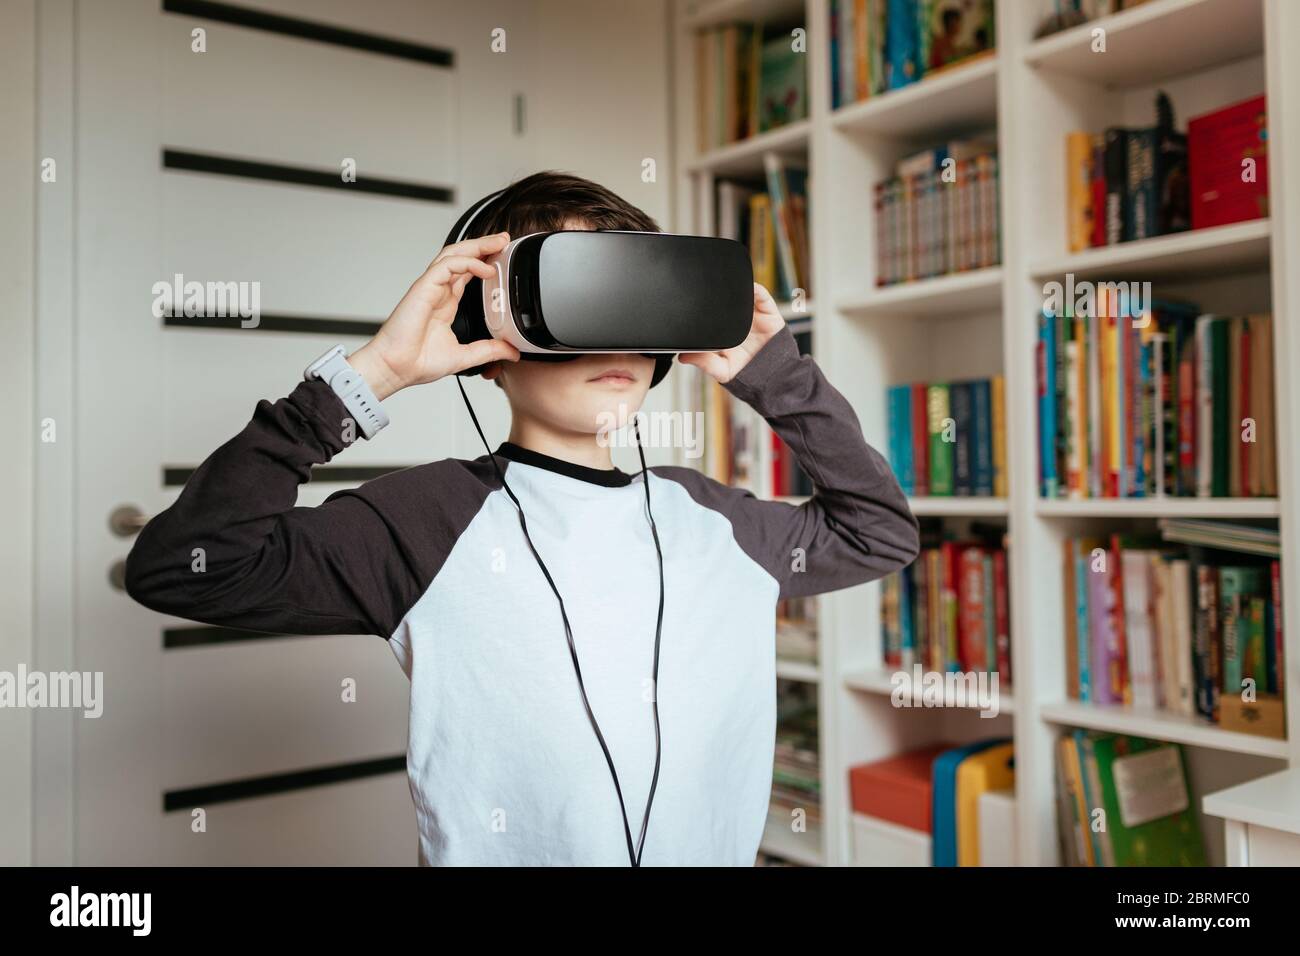 Junge, die VR-Brille mit Kopfhörern trägt. Mittlere Aufnahme eines Teenagers, der ein Virtual Reality-Headset trägt und berührt. Stockfoto